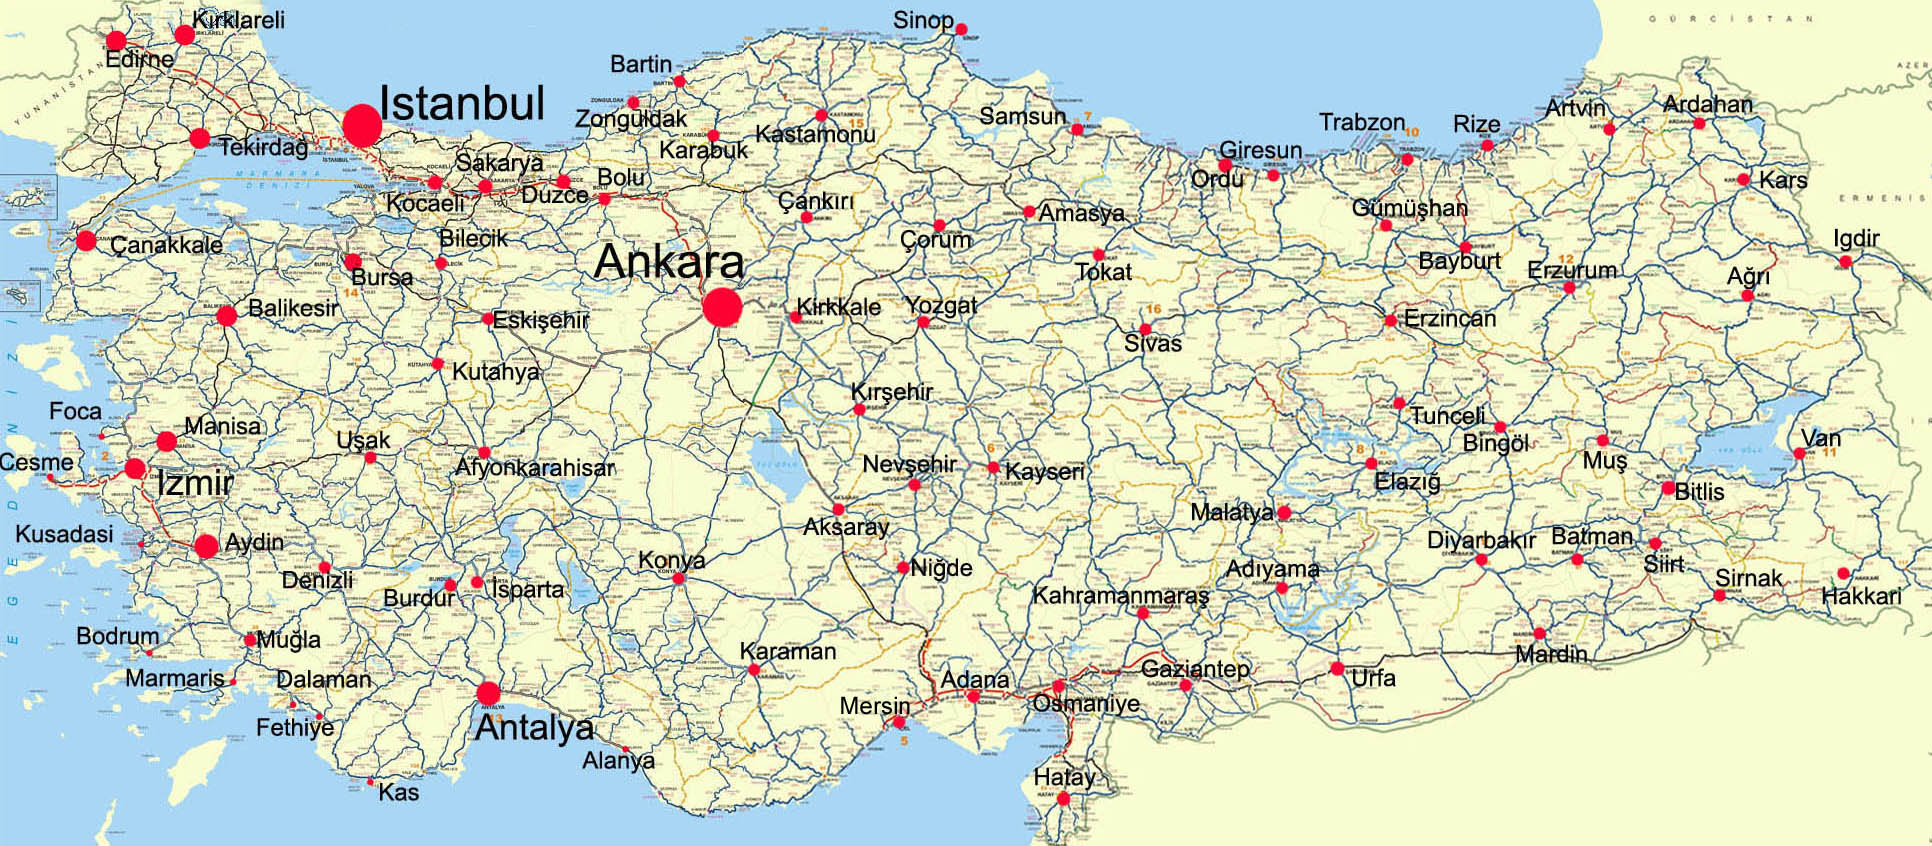 Gök Lojistik | Türkiye Karayolları Haritası